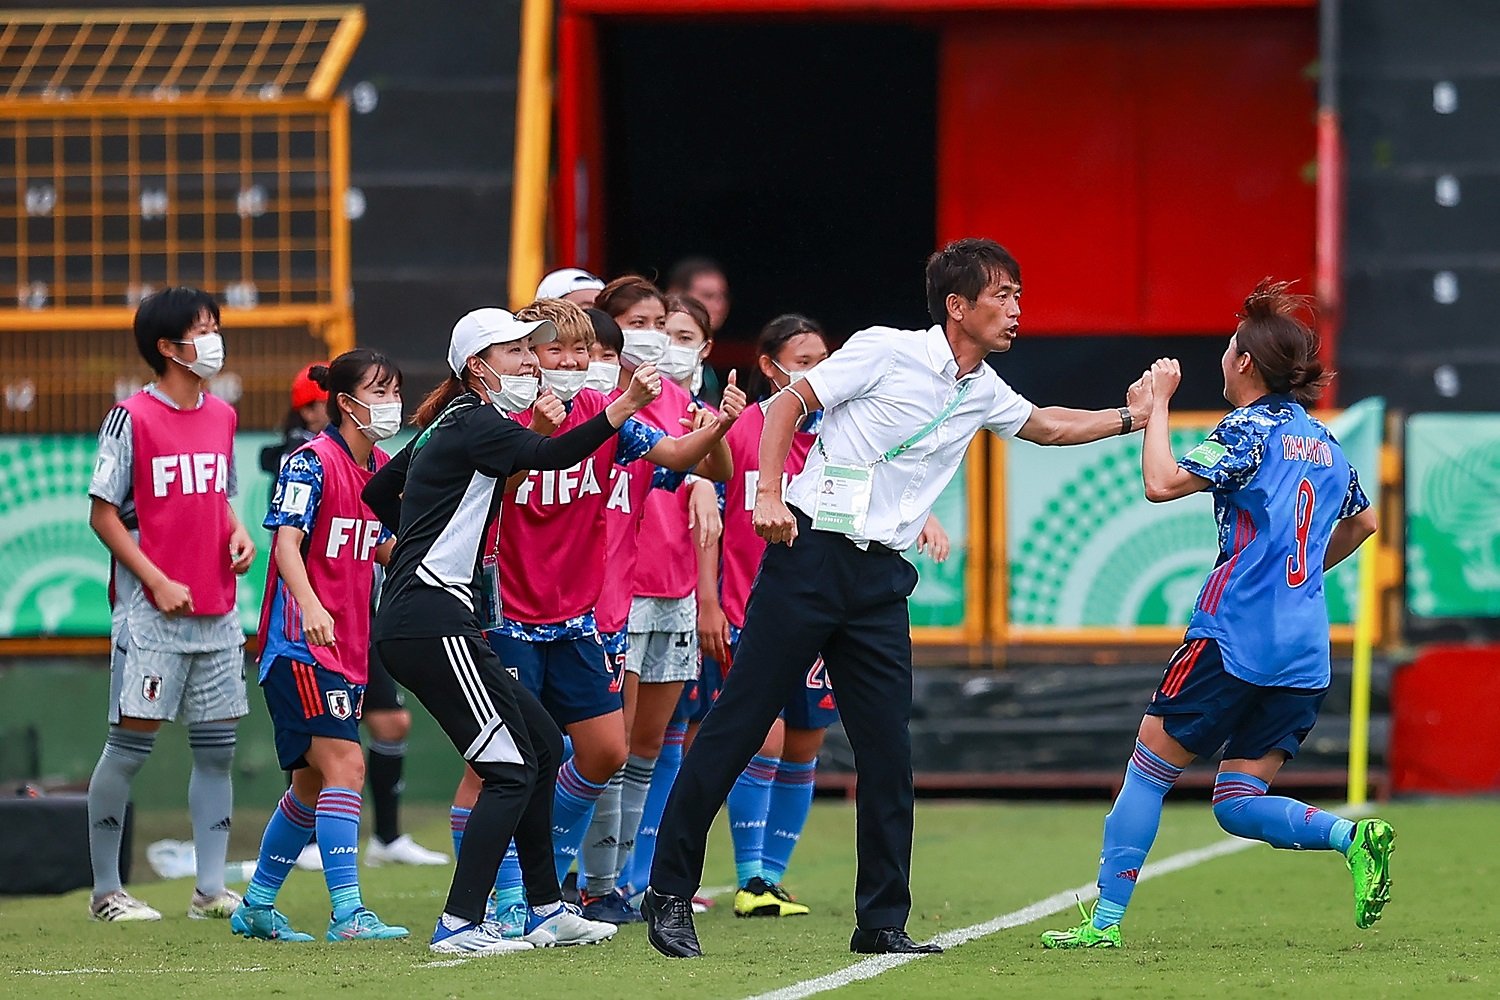 試金石となり得るグループ最終戦のアメリカ戦 U 女子ワールドカップで見える日本代表 ヤングなでしこ の強みと課題 3 概要 日本代表 批評 サッカー批評web